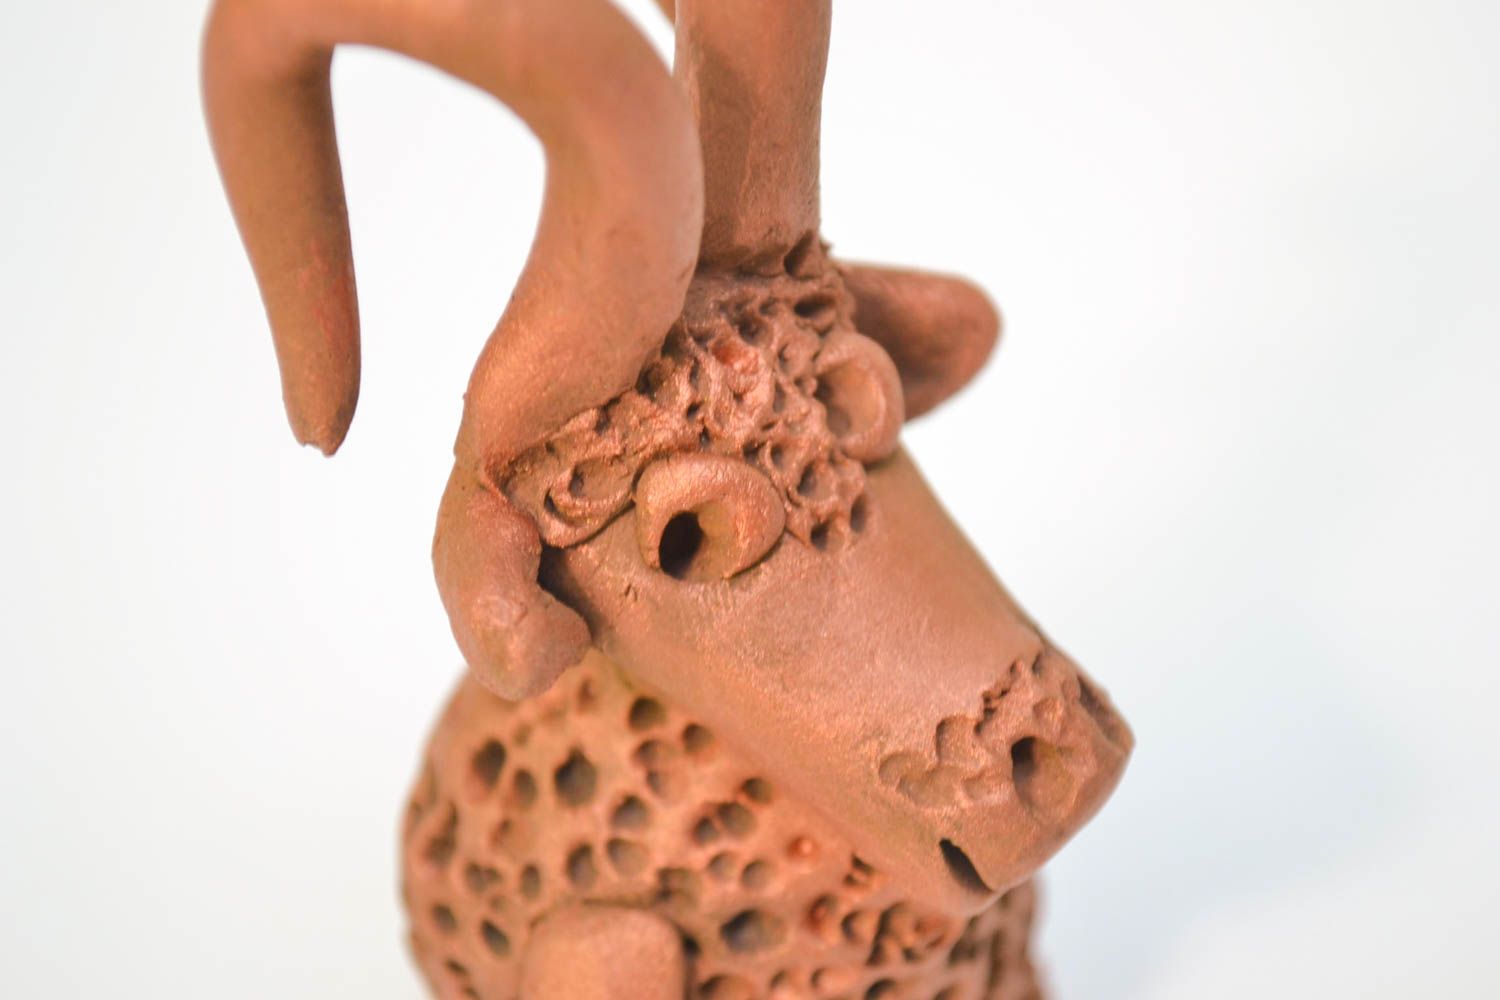 Figurina fatta a mano in ceramica carino animaletto souvenir di terracotta foto 3